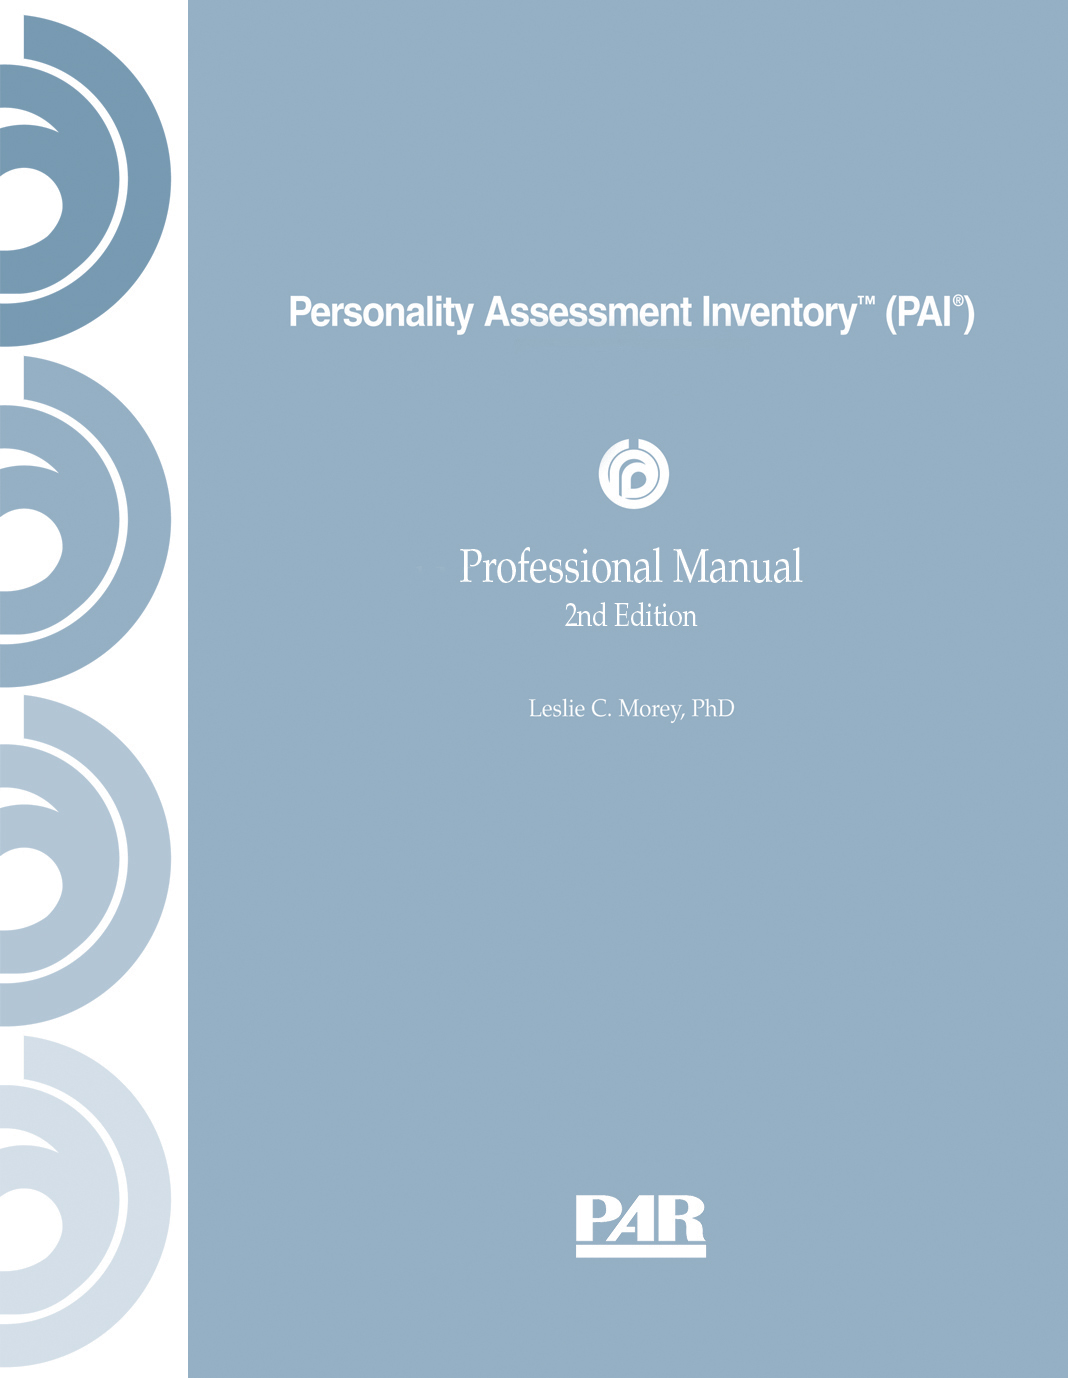 PAI (Personality Assessment Inventory) persoonallisuustesti